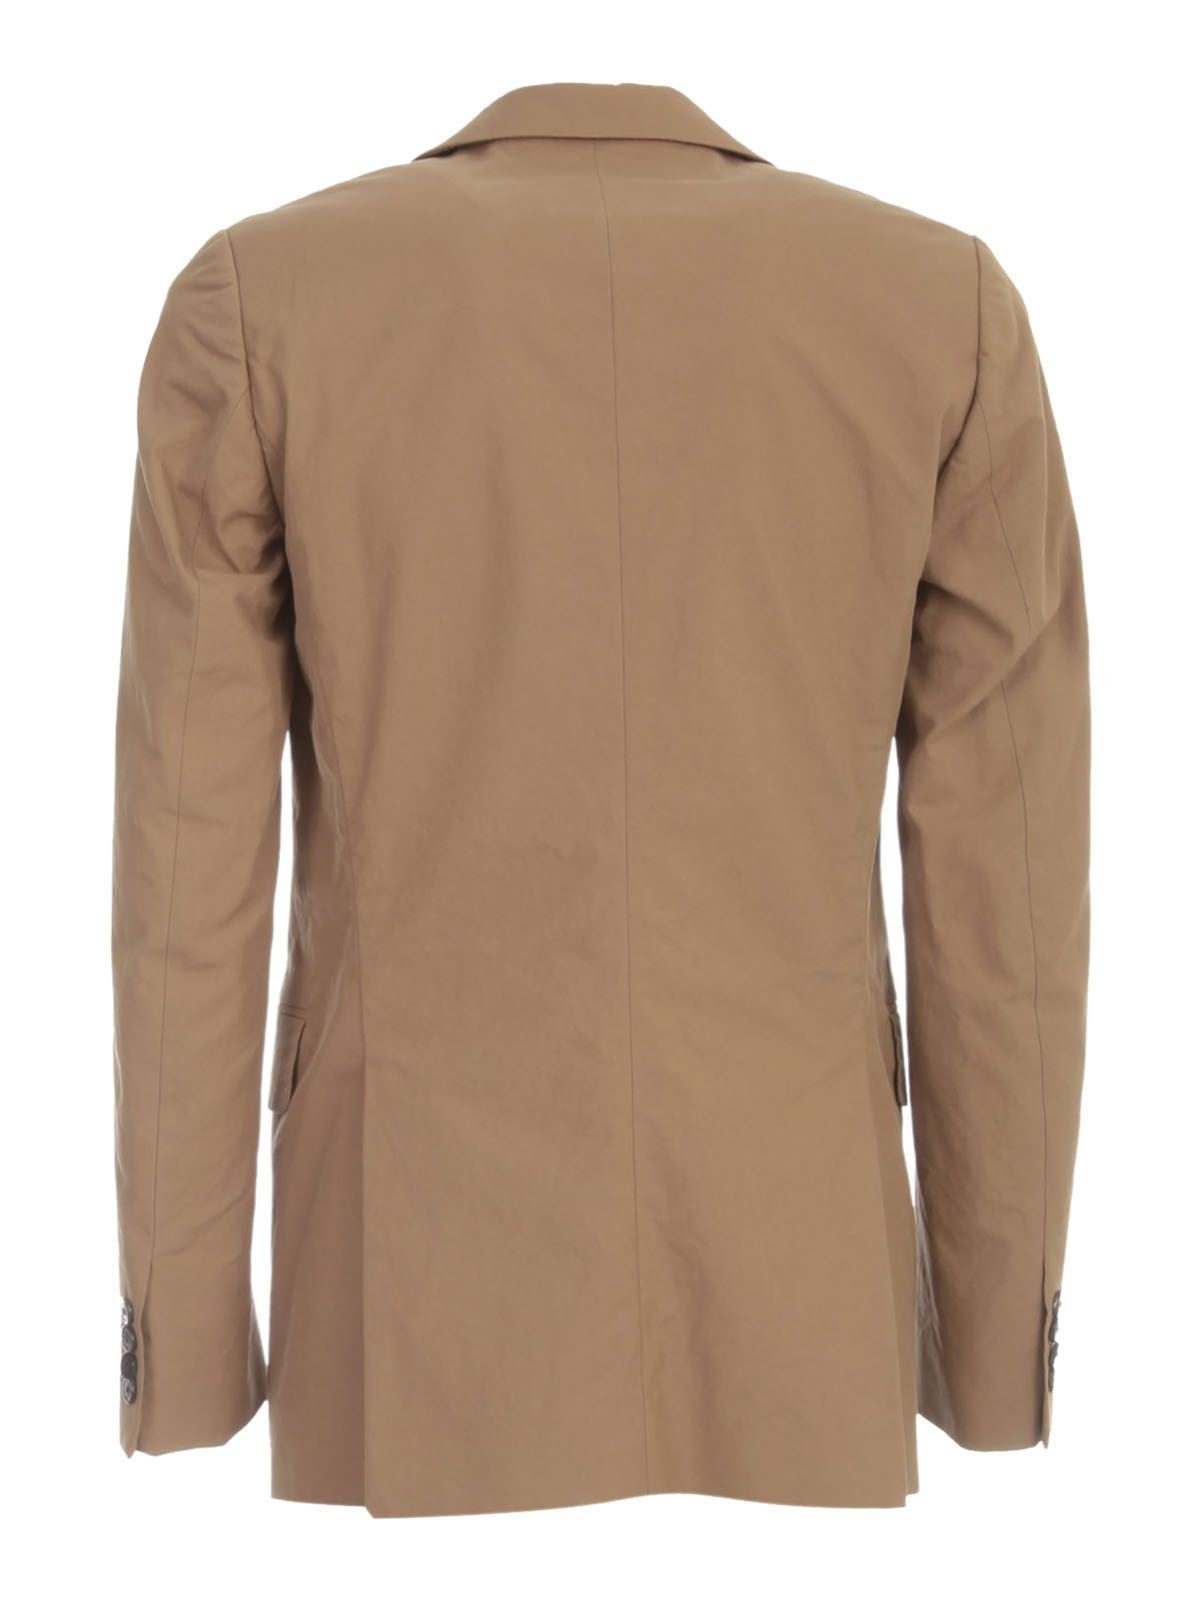 Dries Van Noten Man`s brown cotton jacket - 2